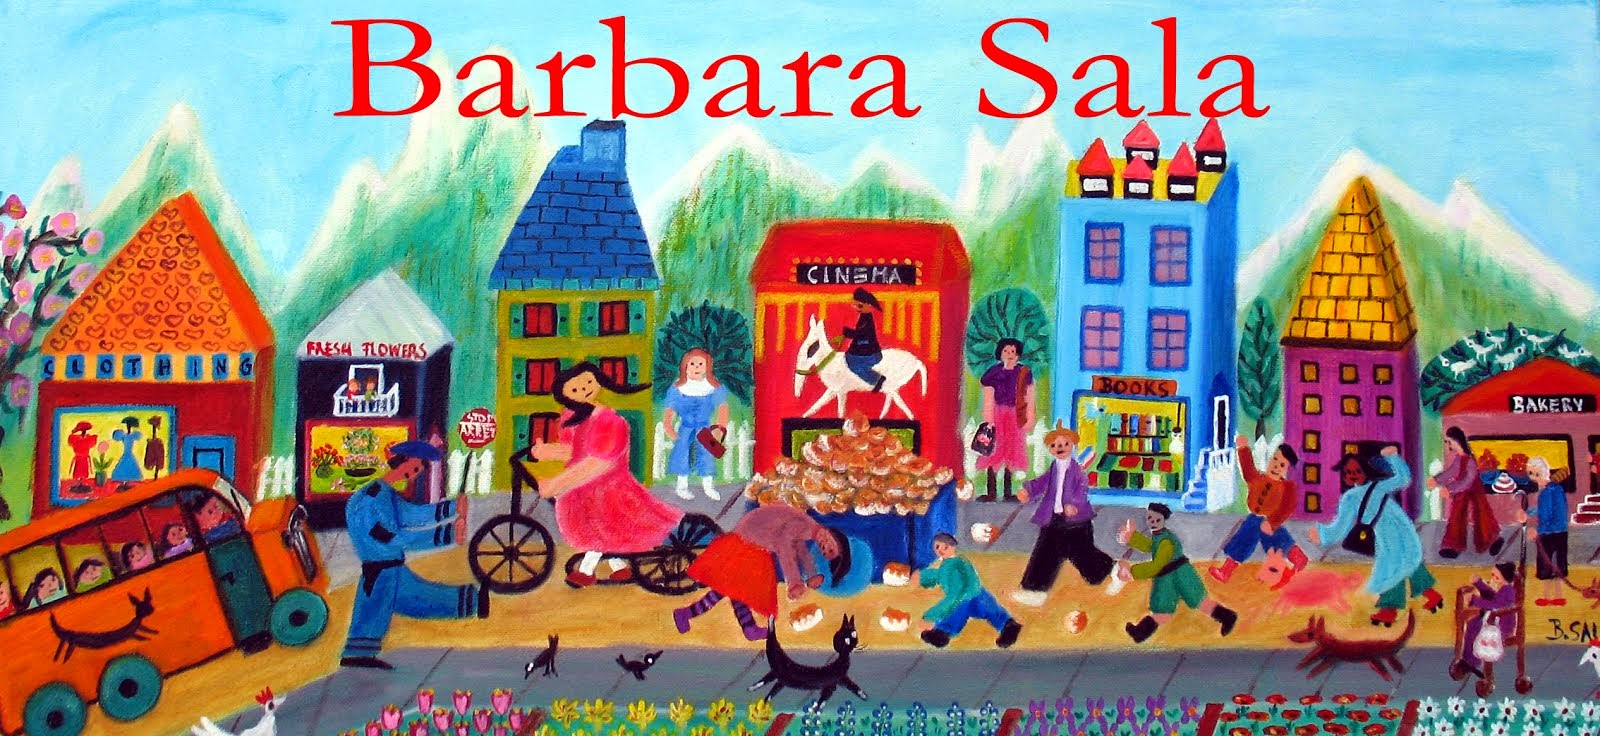 Barbara sala publishing